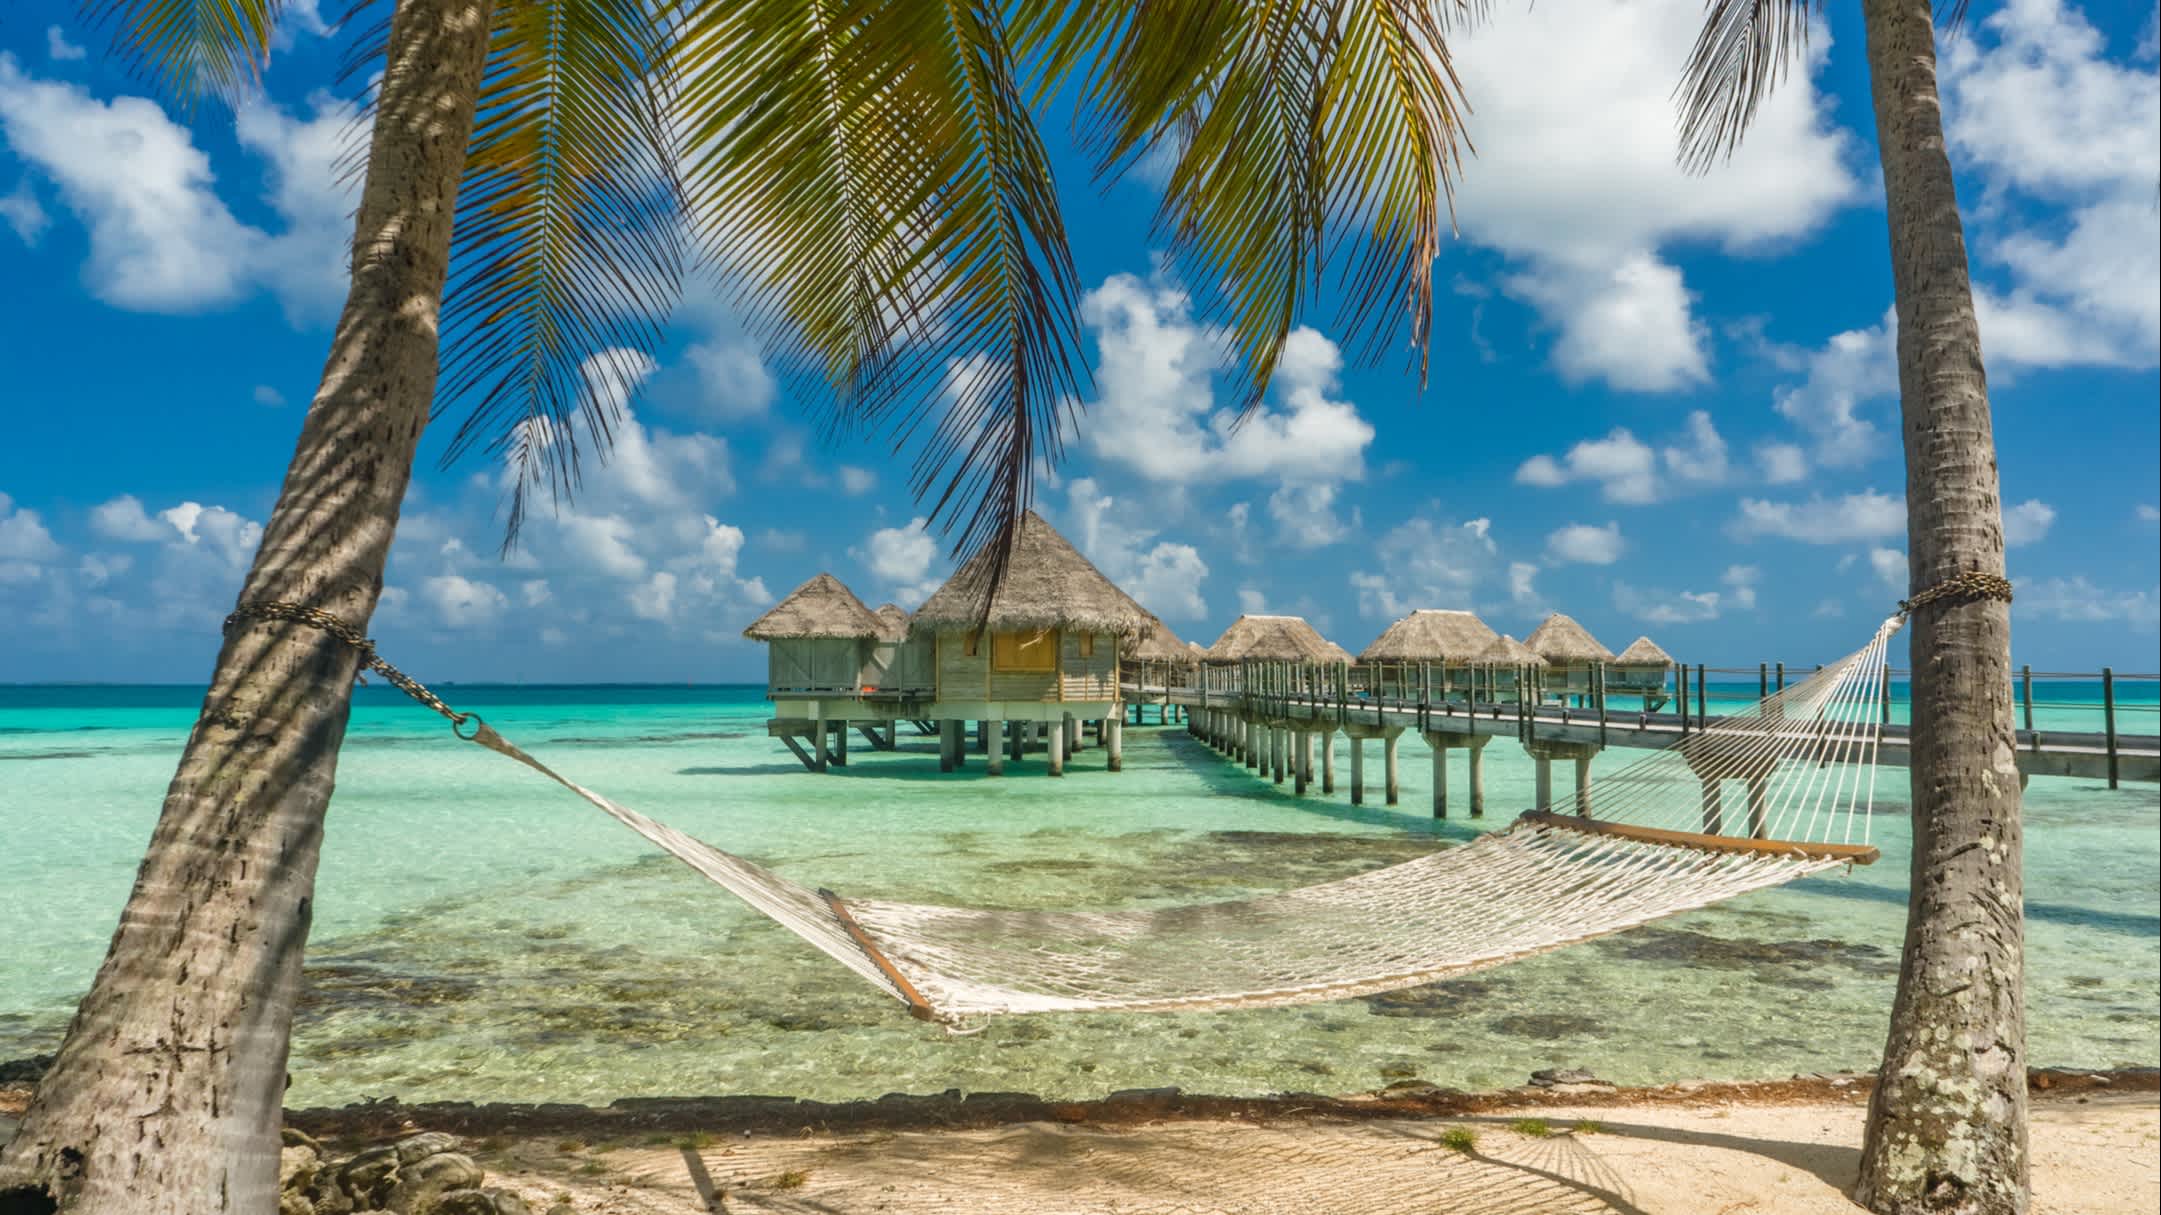 Blick auf der Hängematte in einem Strand in Tikehau, Tahiti, Französisch-Polynesien.

